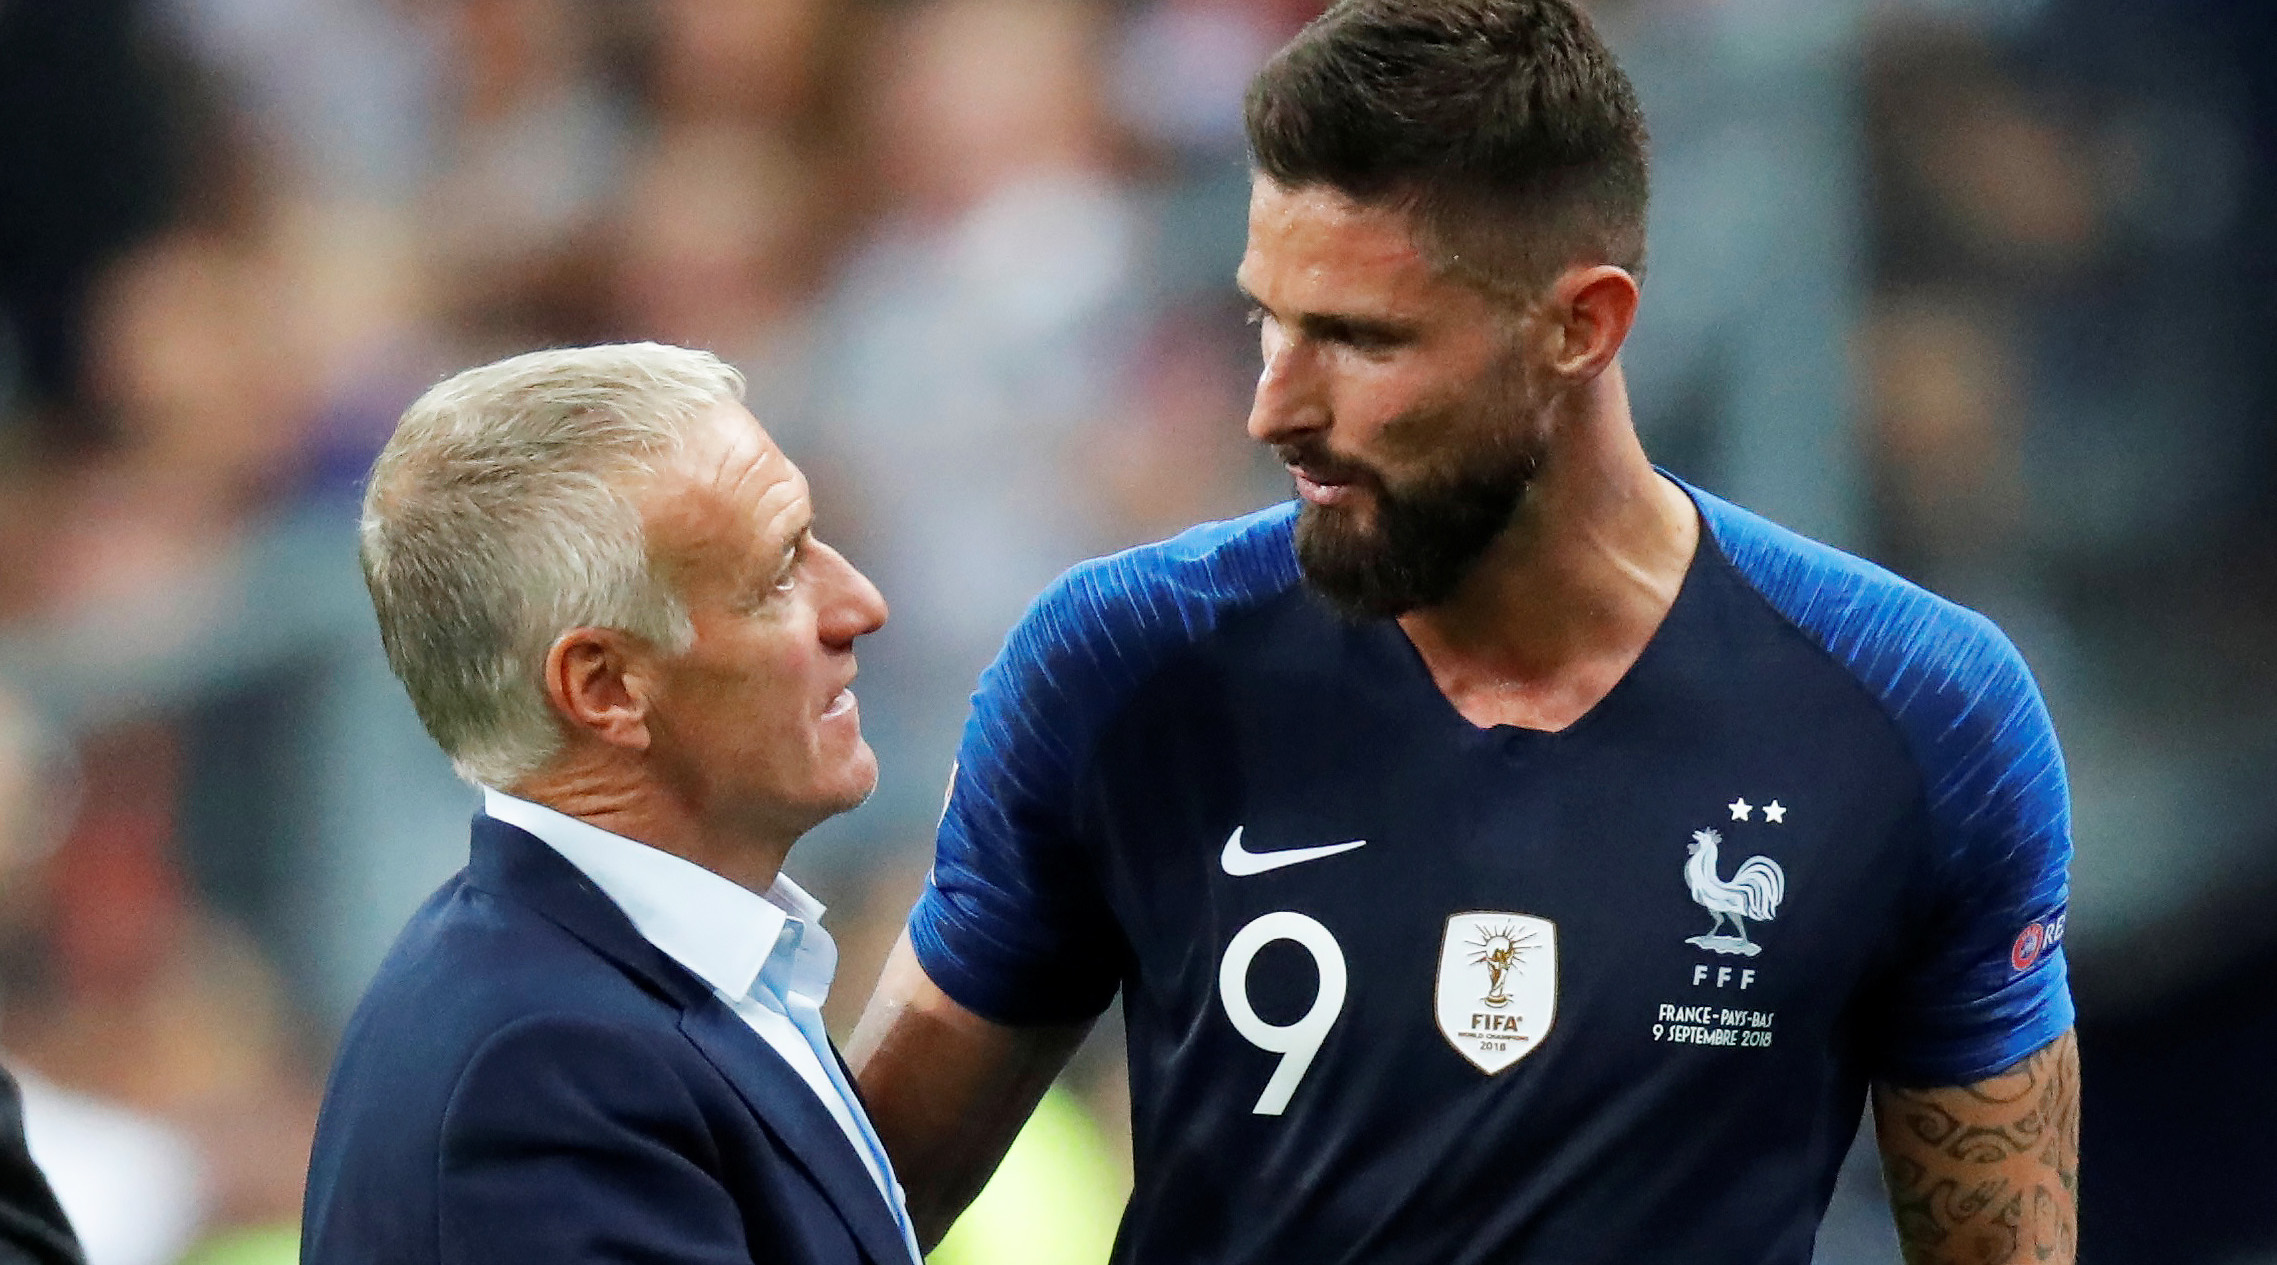 Équipe de France: Giroud surpris par l’attitude de Deschamps